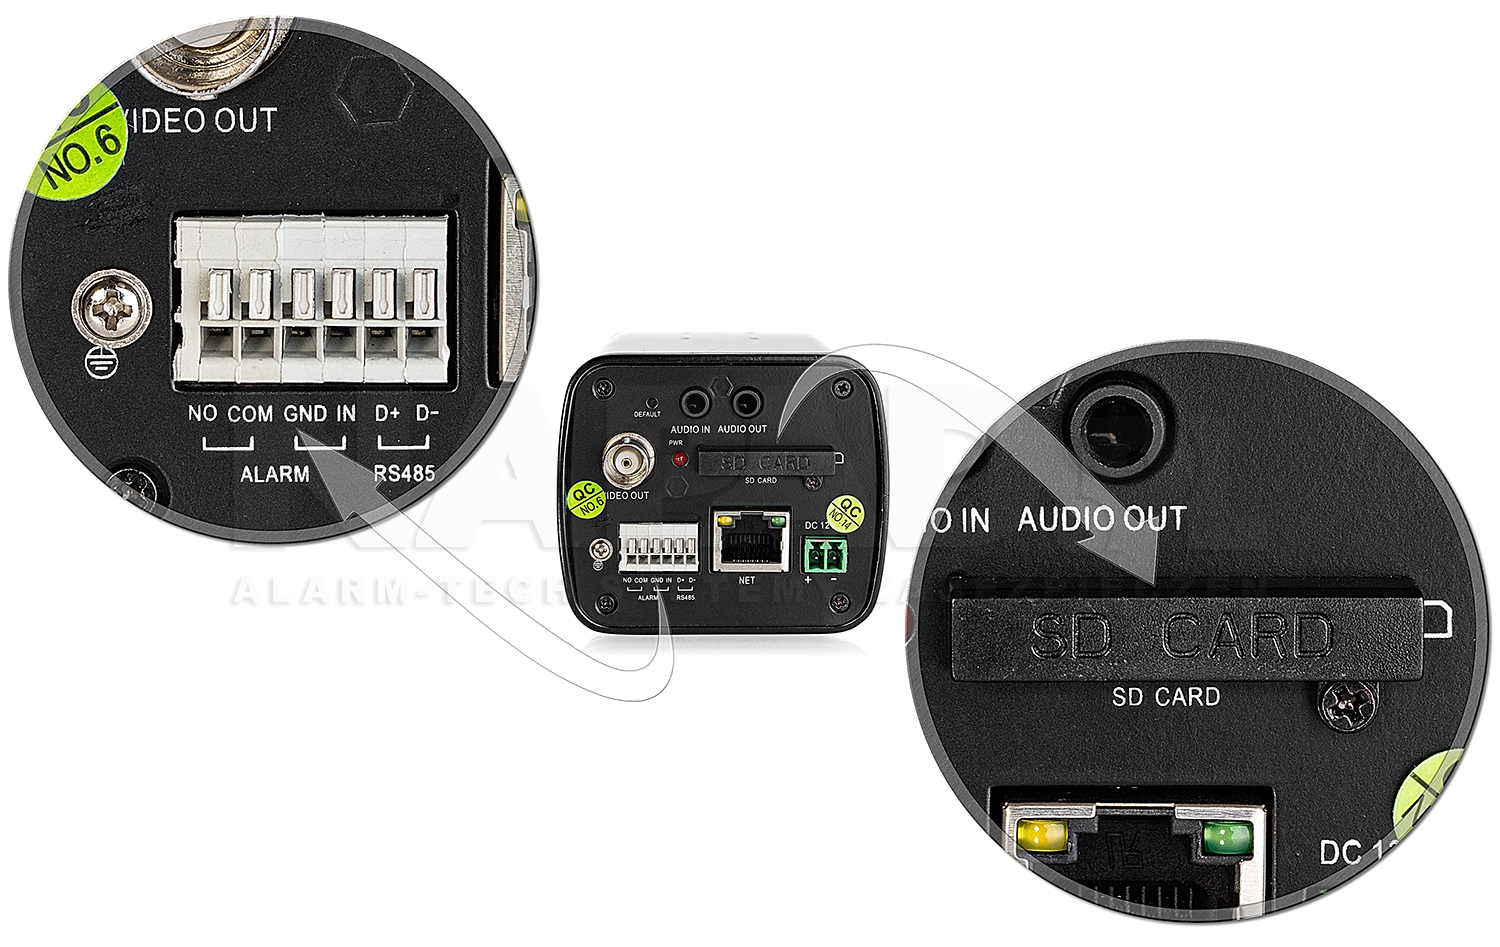 Wejścia alarmowe oraz slot karty pamięci SD w kamerze HD2000B.